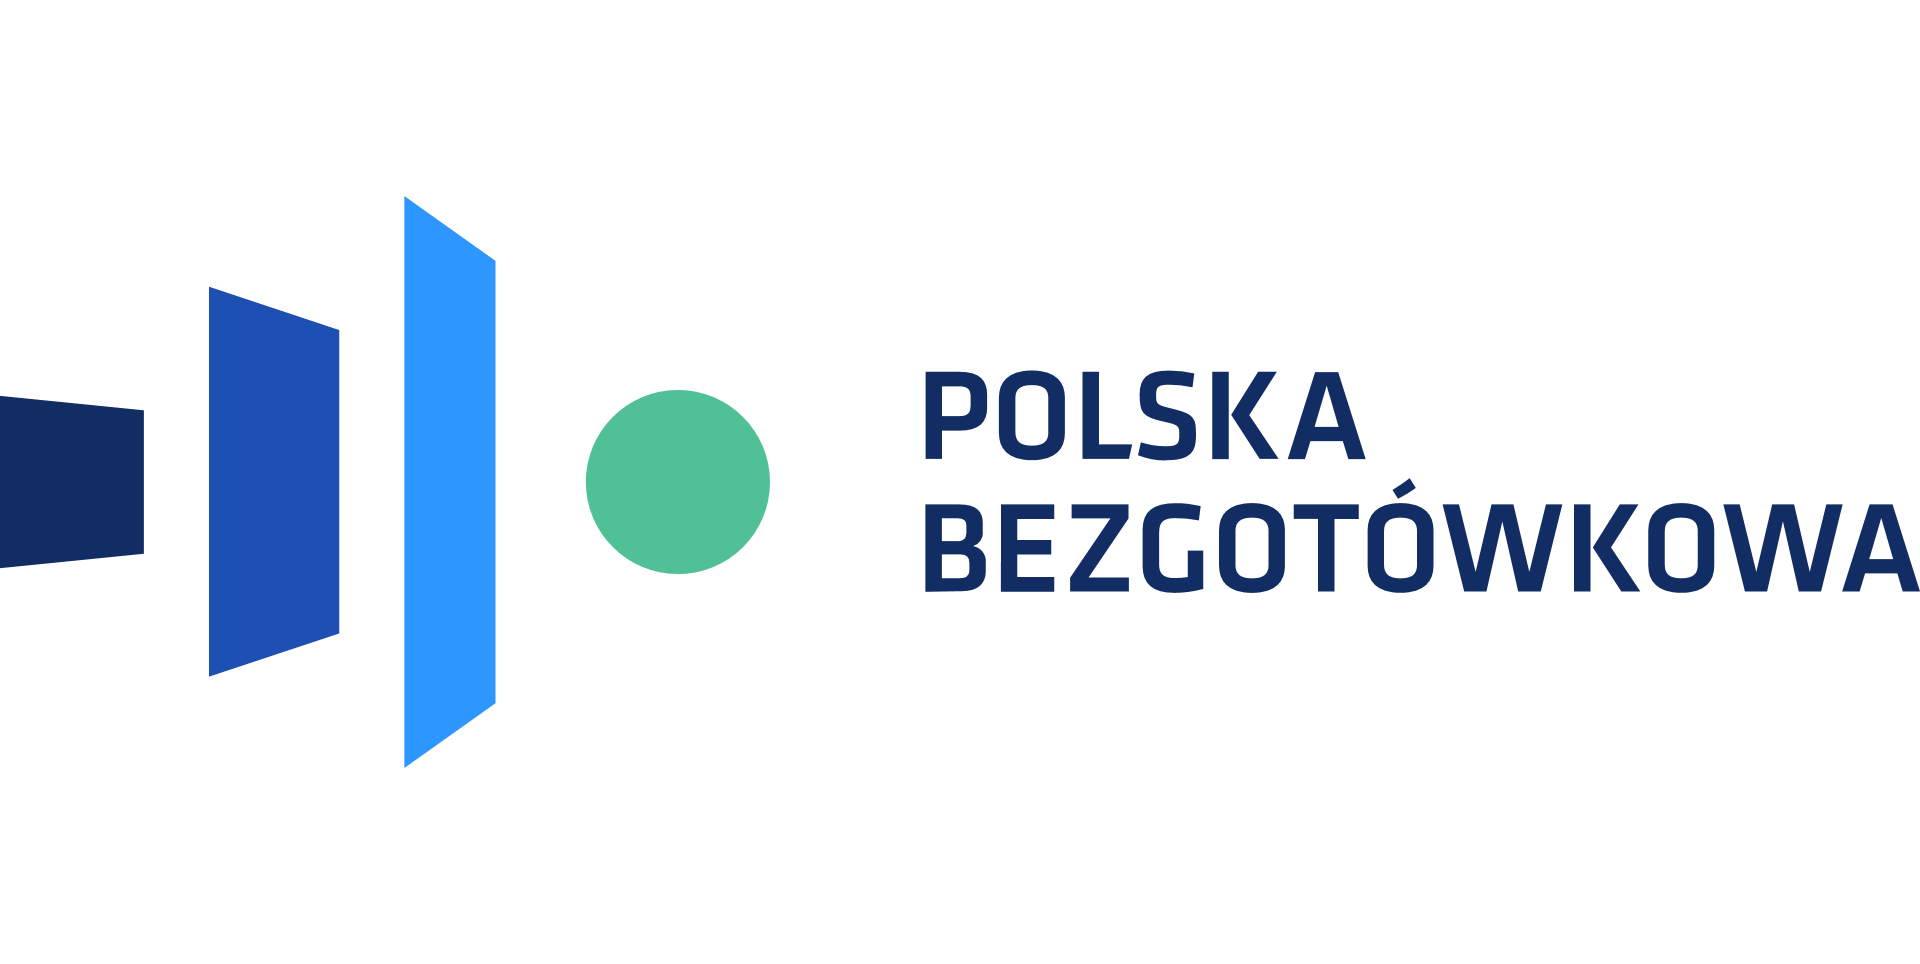 Program Polska Bezgotówkowa kasy fiskalne Opole